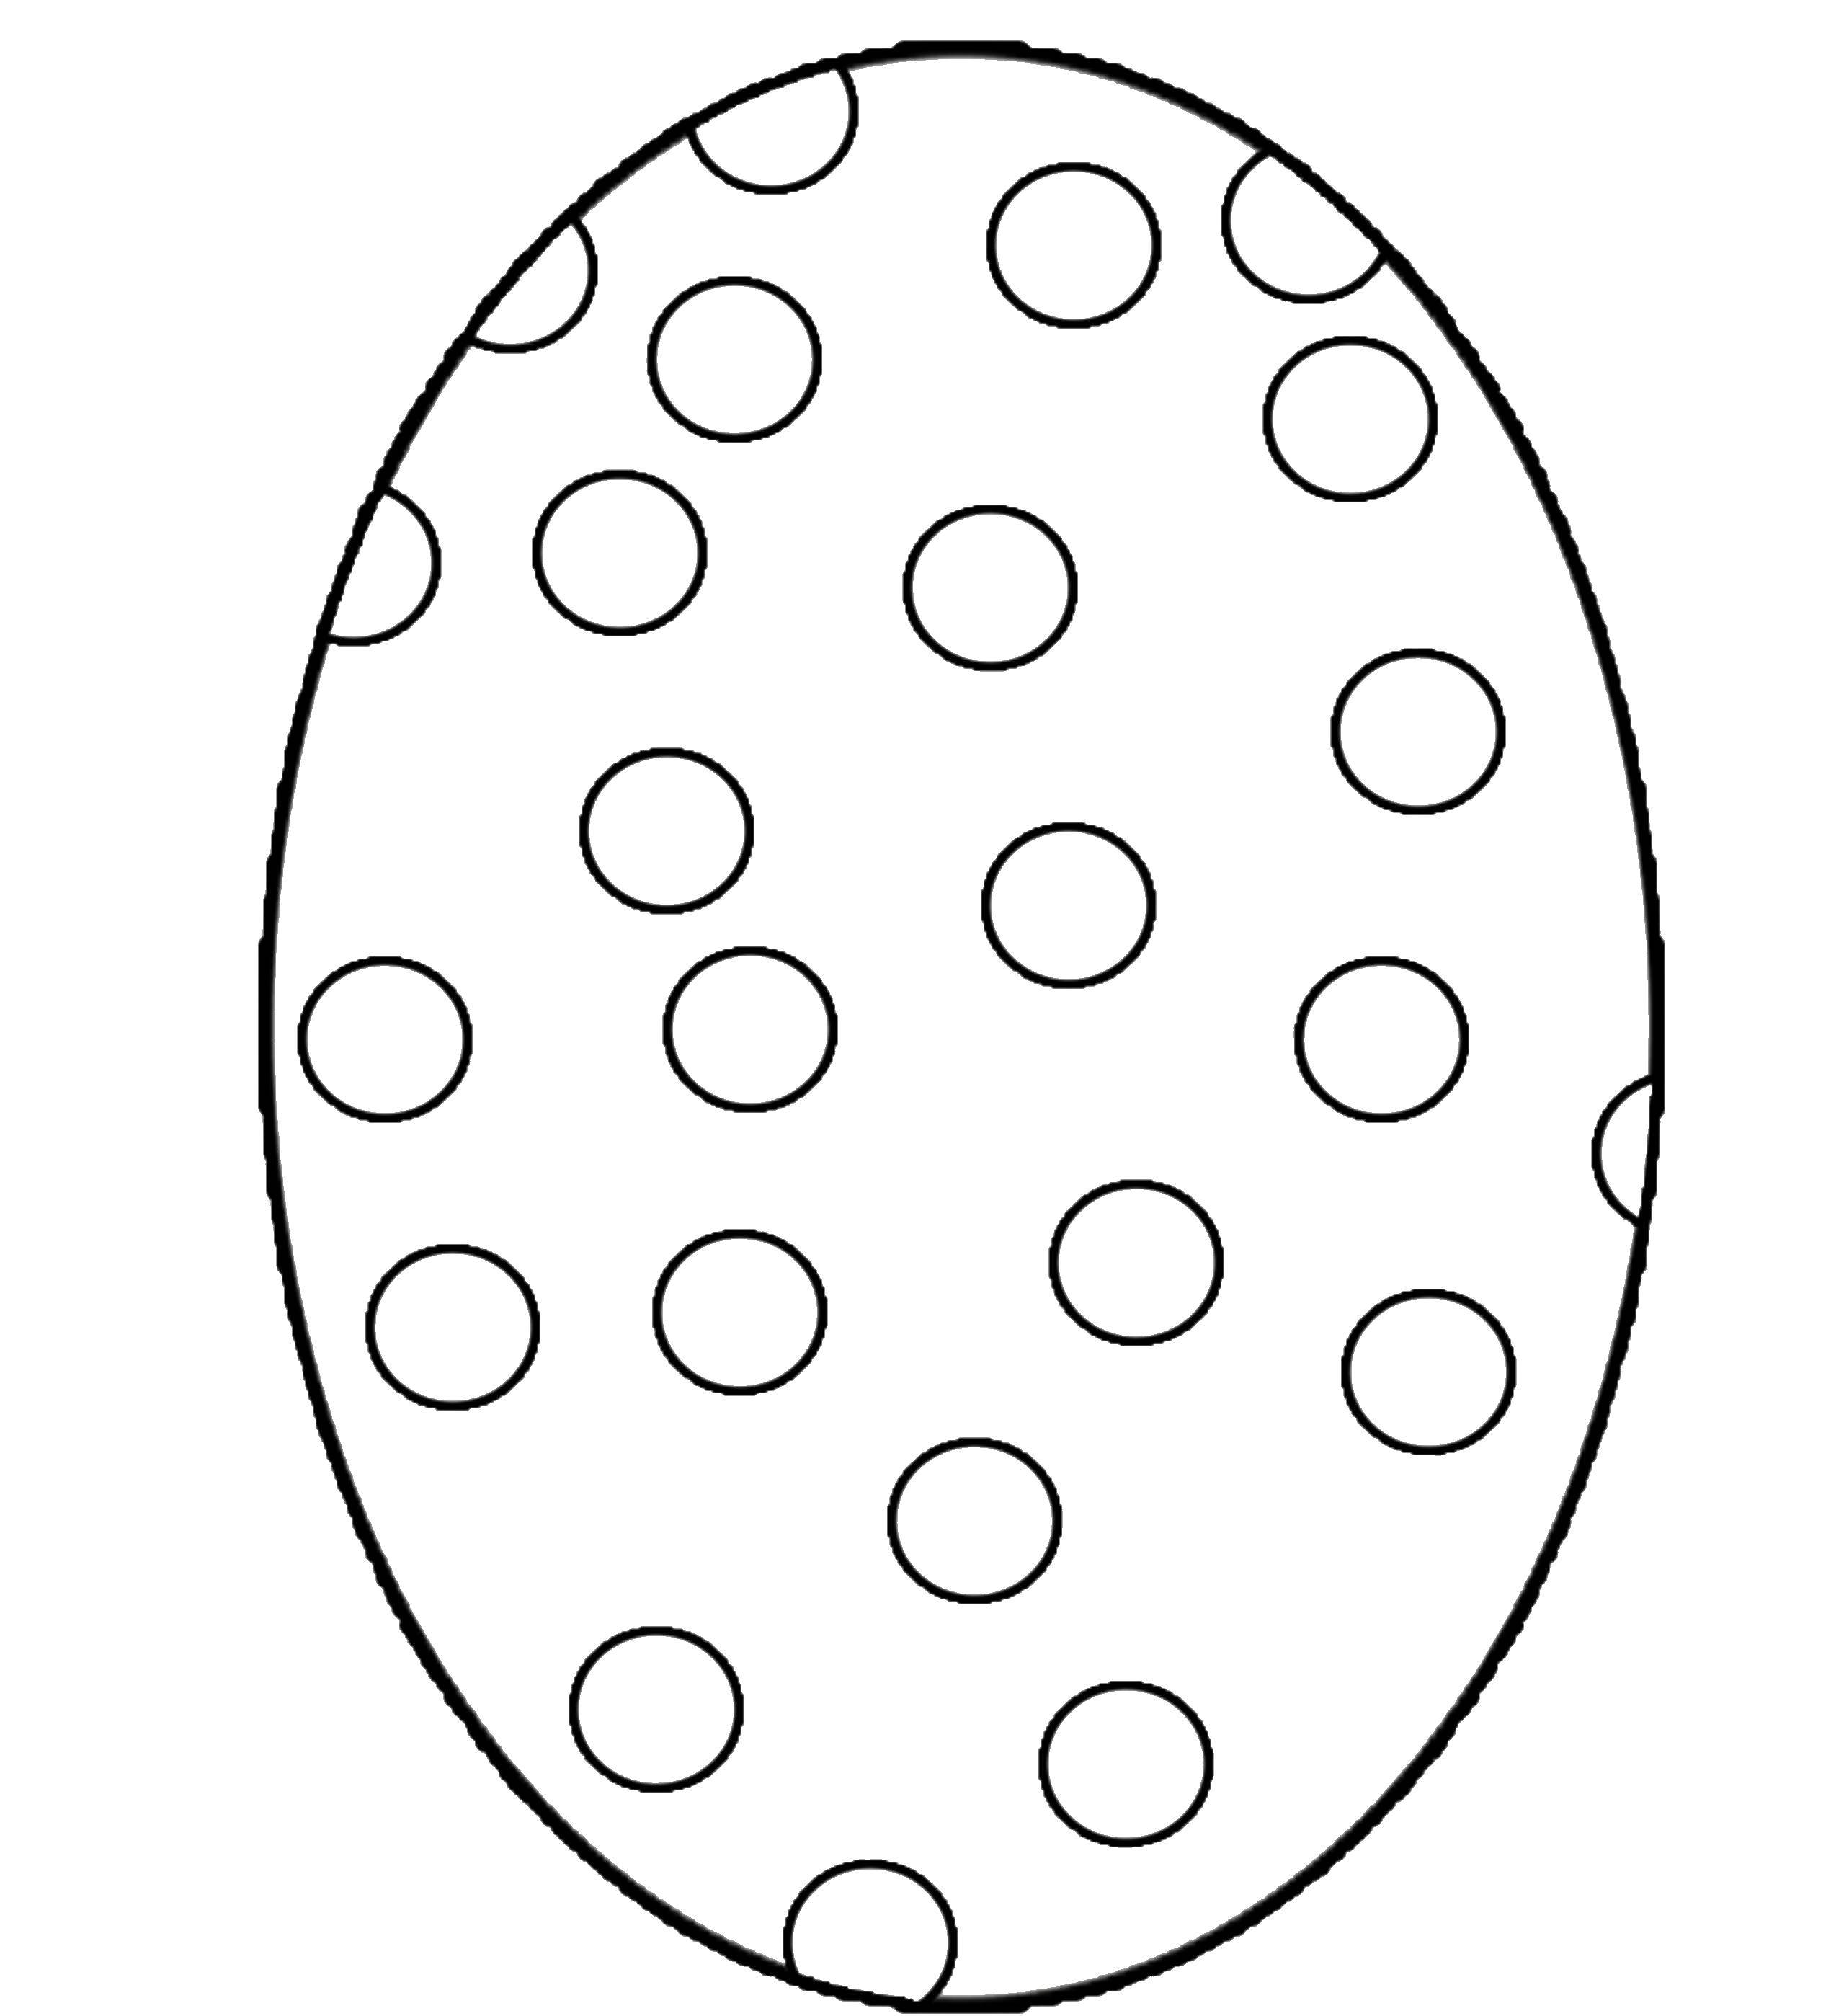 Распечатать раскраску яйца. Пасхальное яйцо раскраска. Яйцо раскраска для детей. Пасхальное яйцо раскраска для детей. Раскраски пасочных яиц.